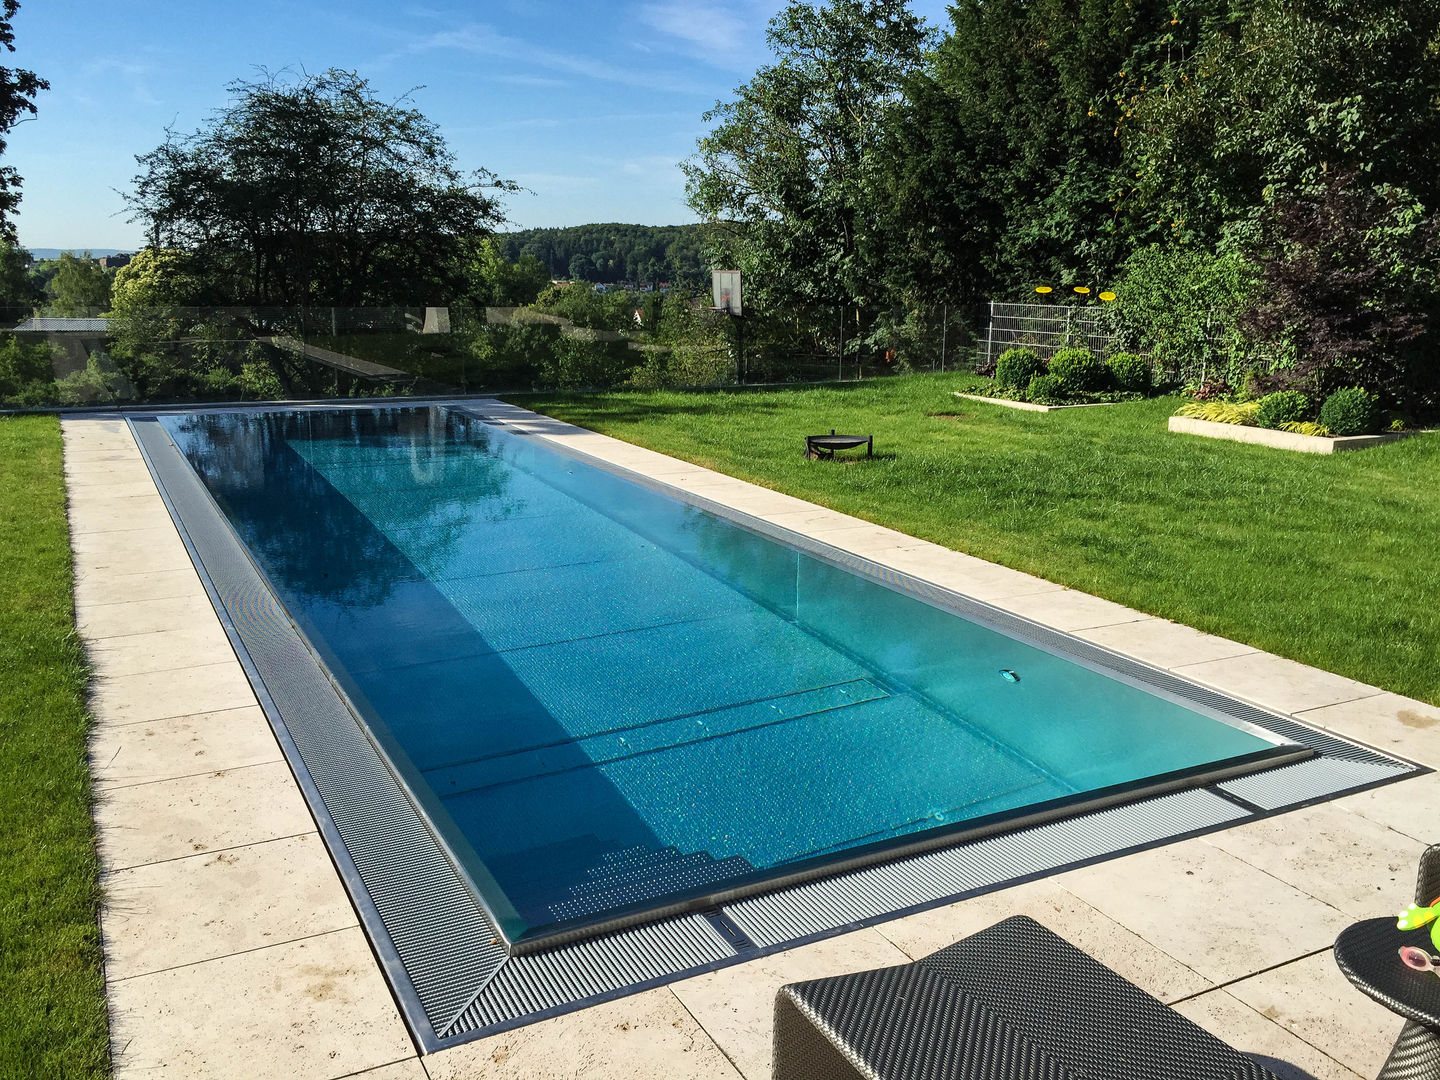 Classic Modular Stainless Steel Pool homify Hồ bơi phong cách hiện đại